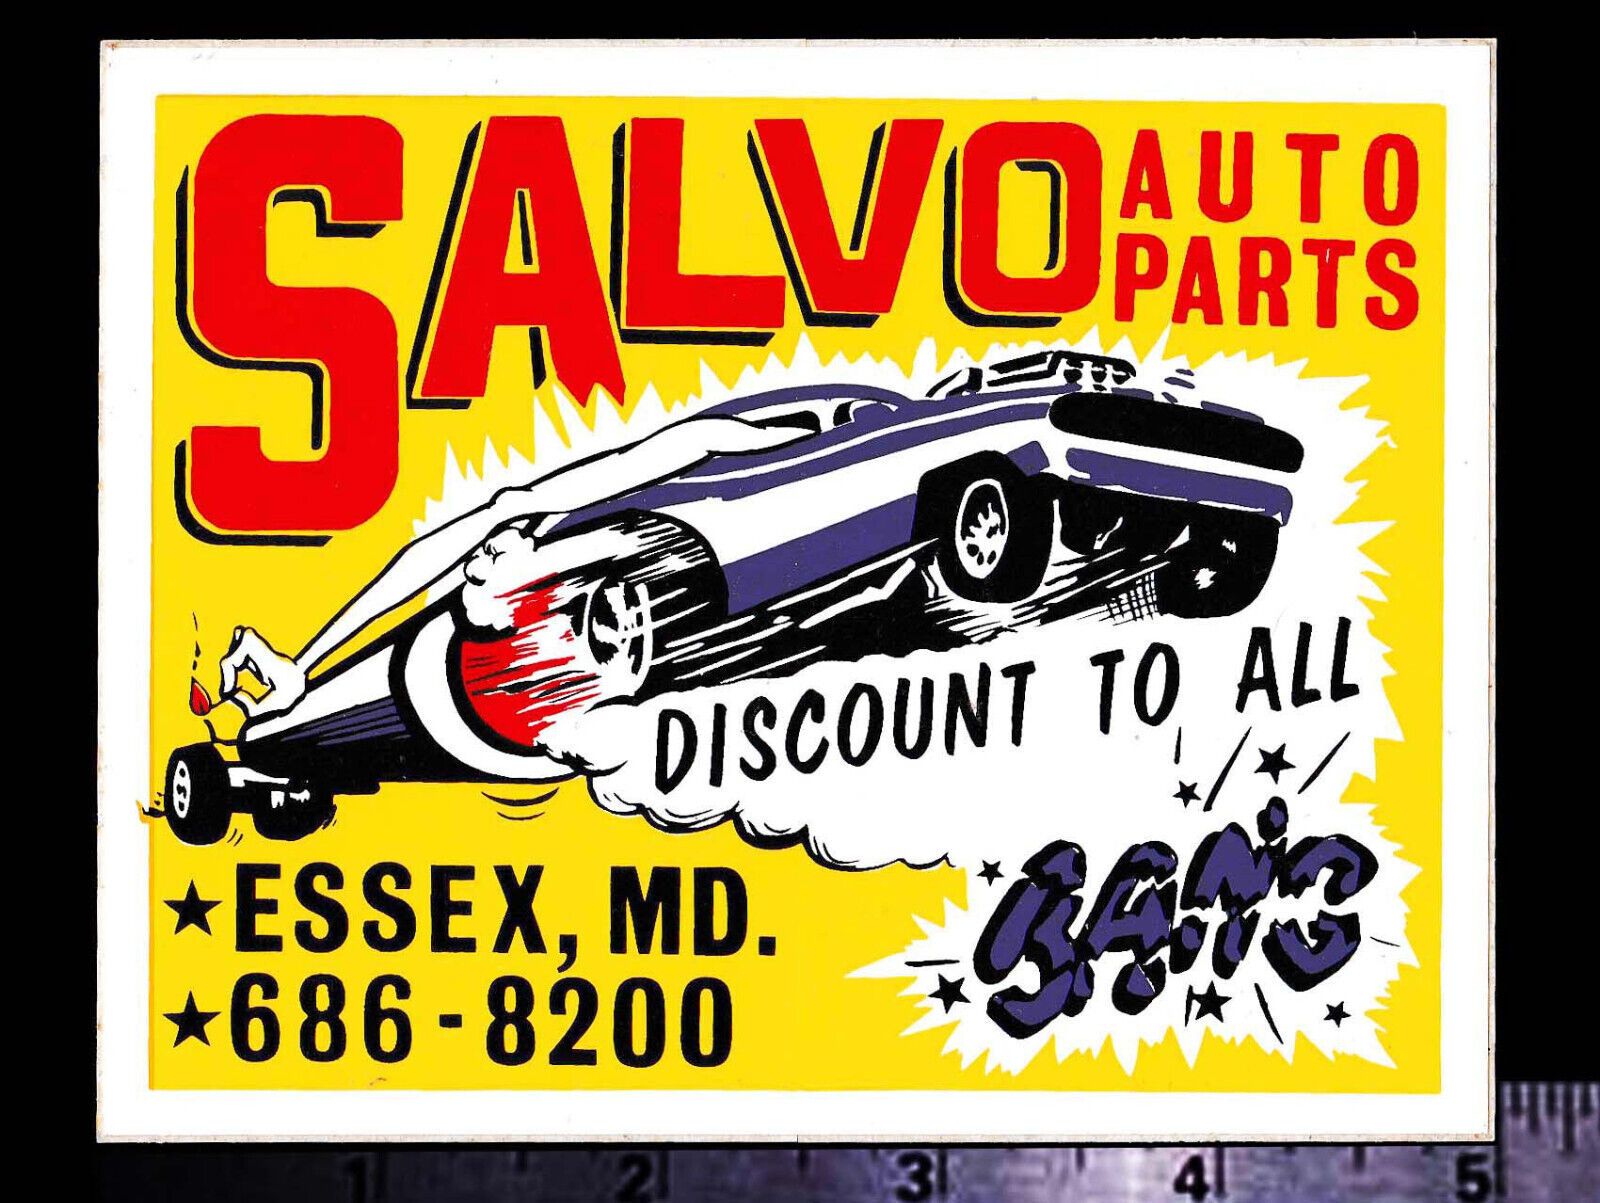 SALVO Auto Parts - Essex, MD. - Original Vintage 60's 70's Racing Decal/Sticker